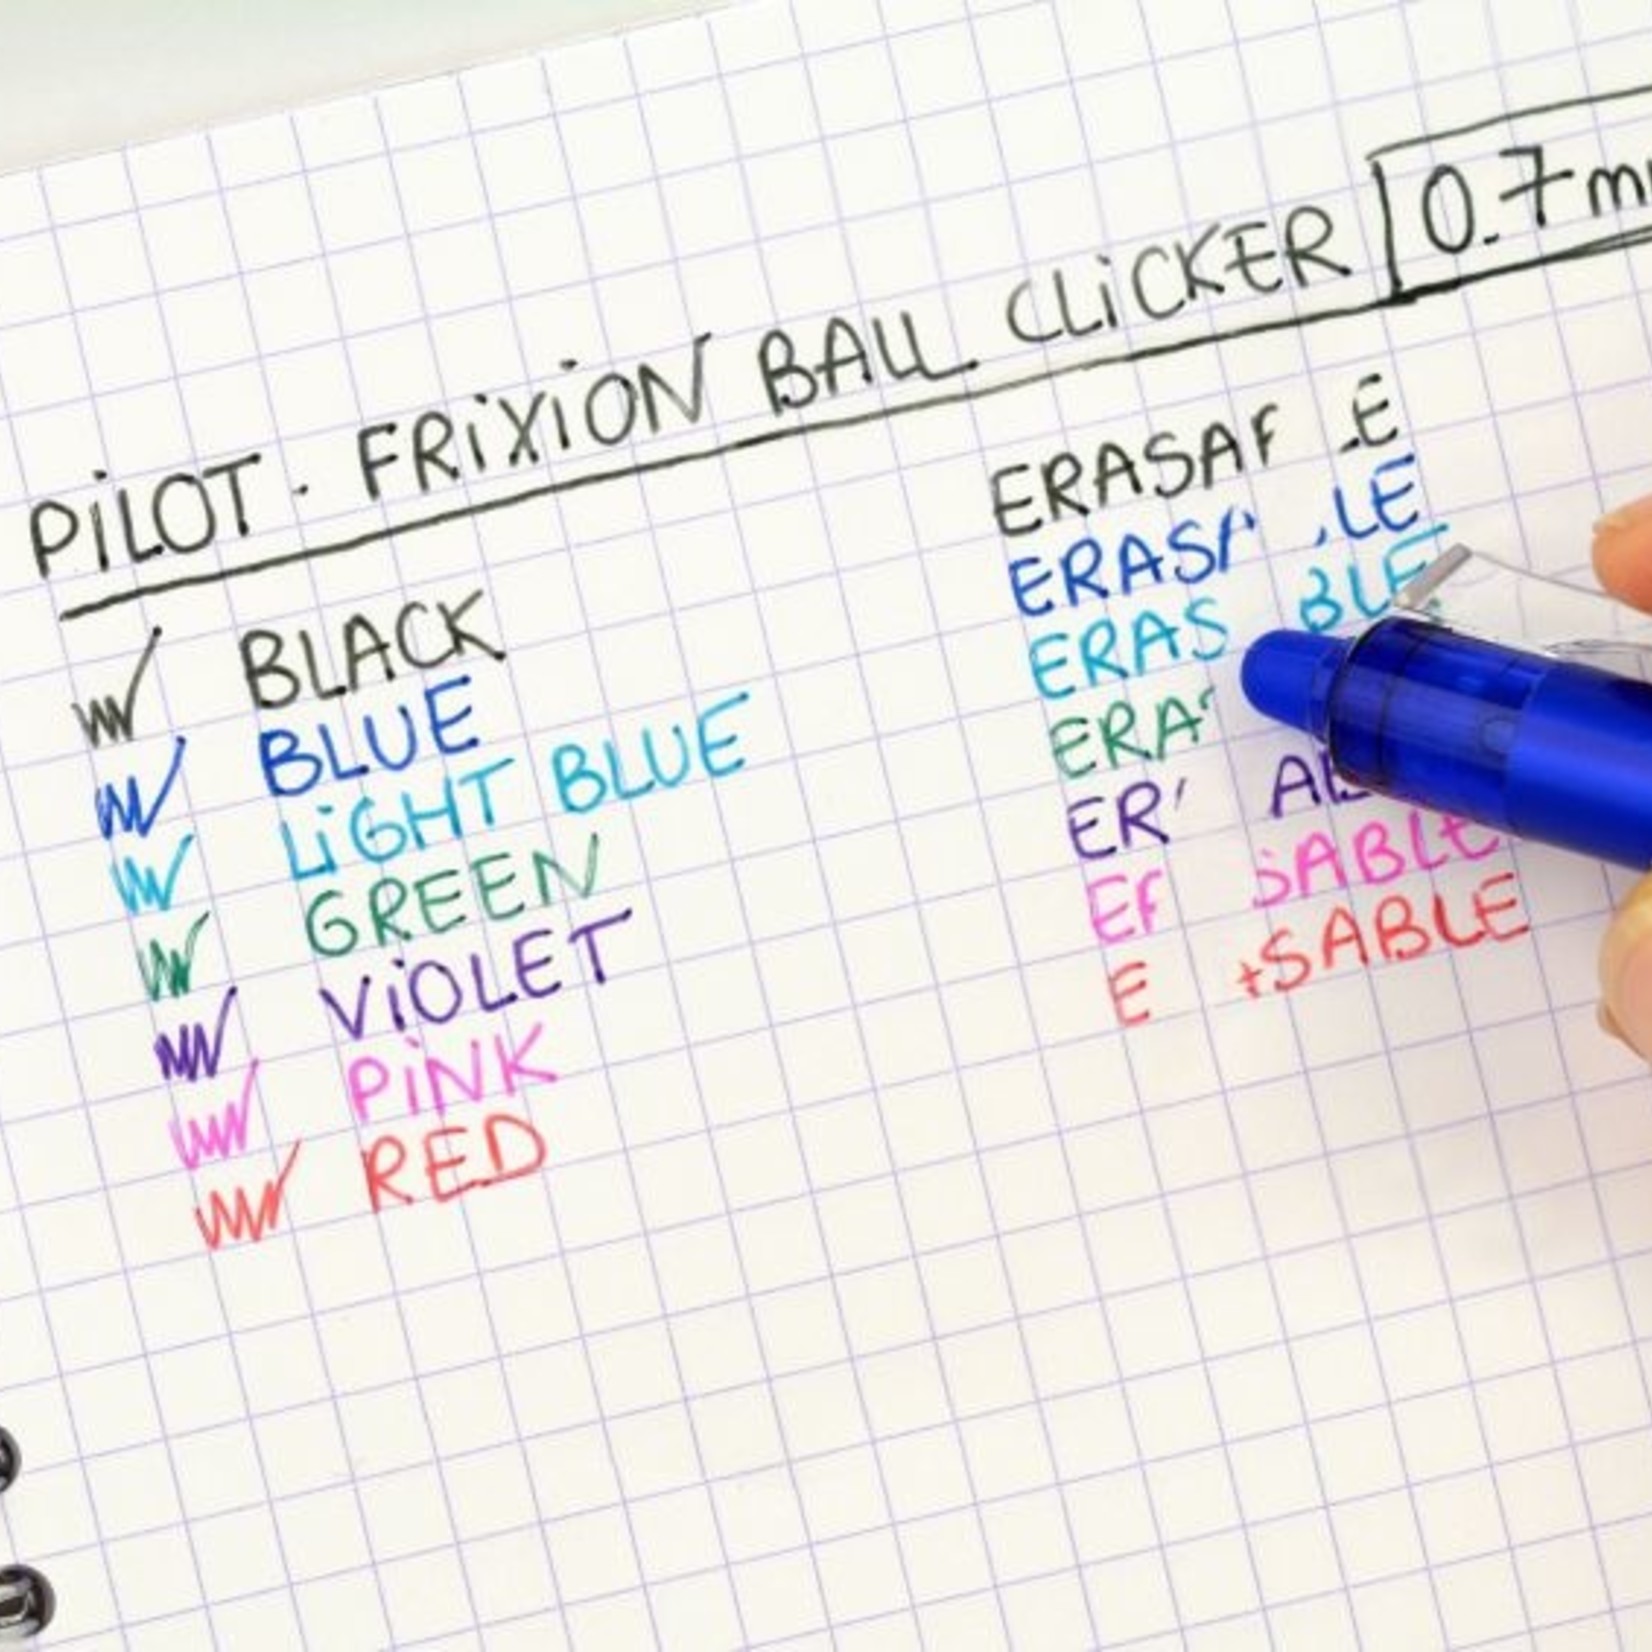 PILOT FRIXION BALL CLICKER ERASABLE INK PEN FINE 0.7MM LIGHT BLUE